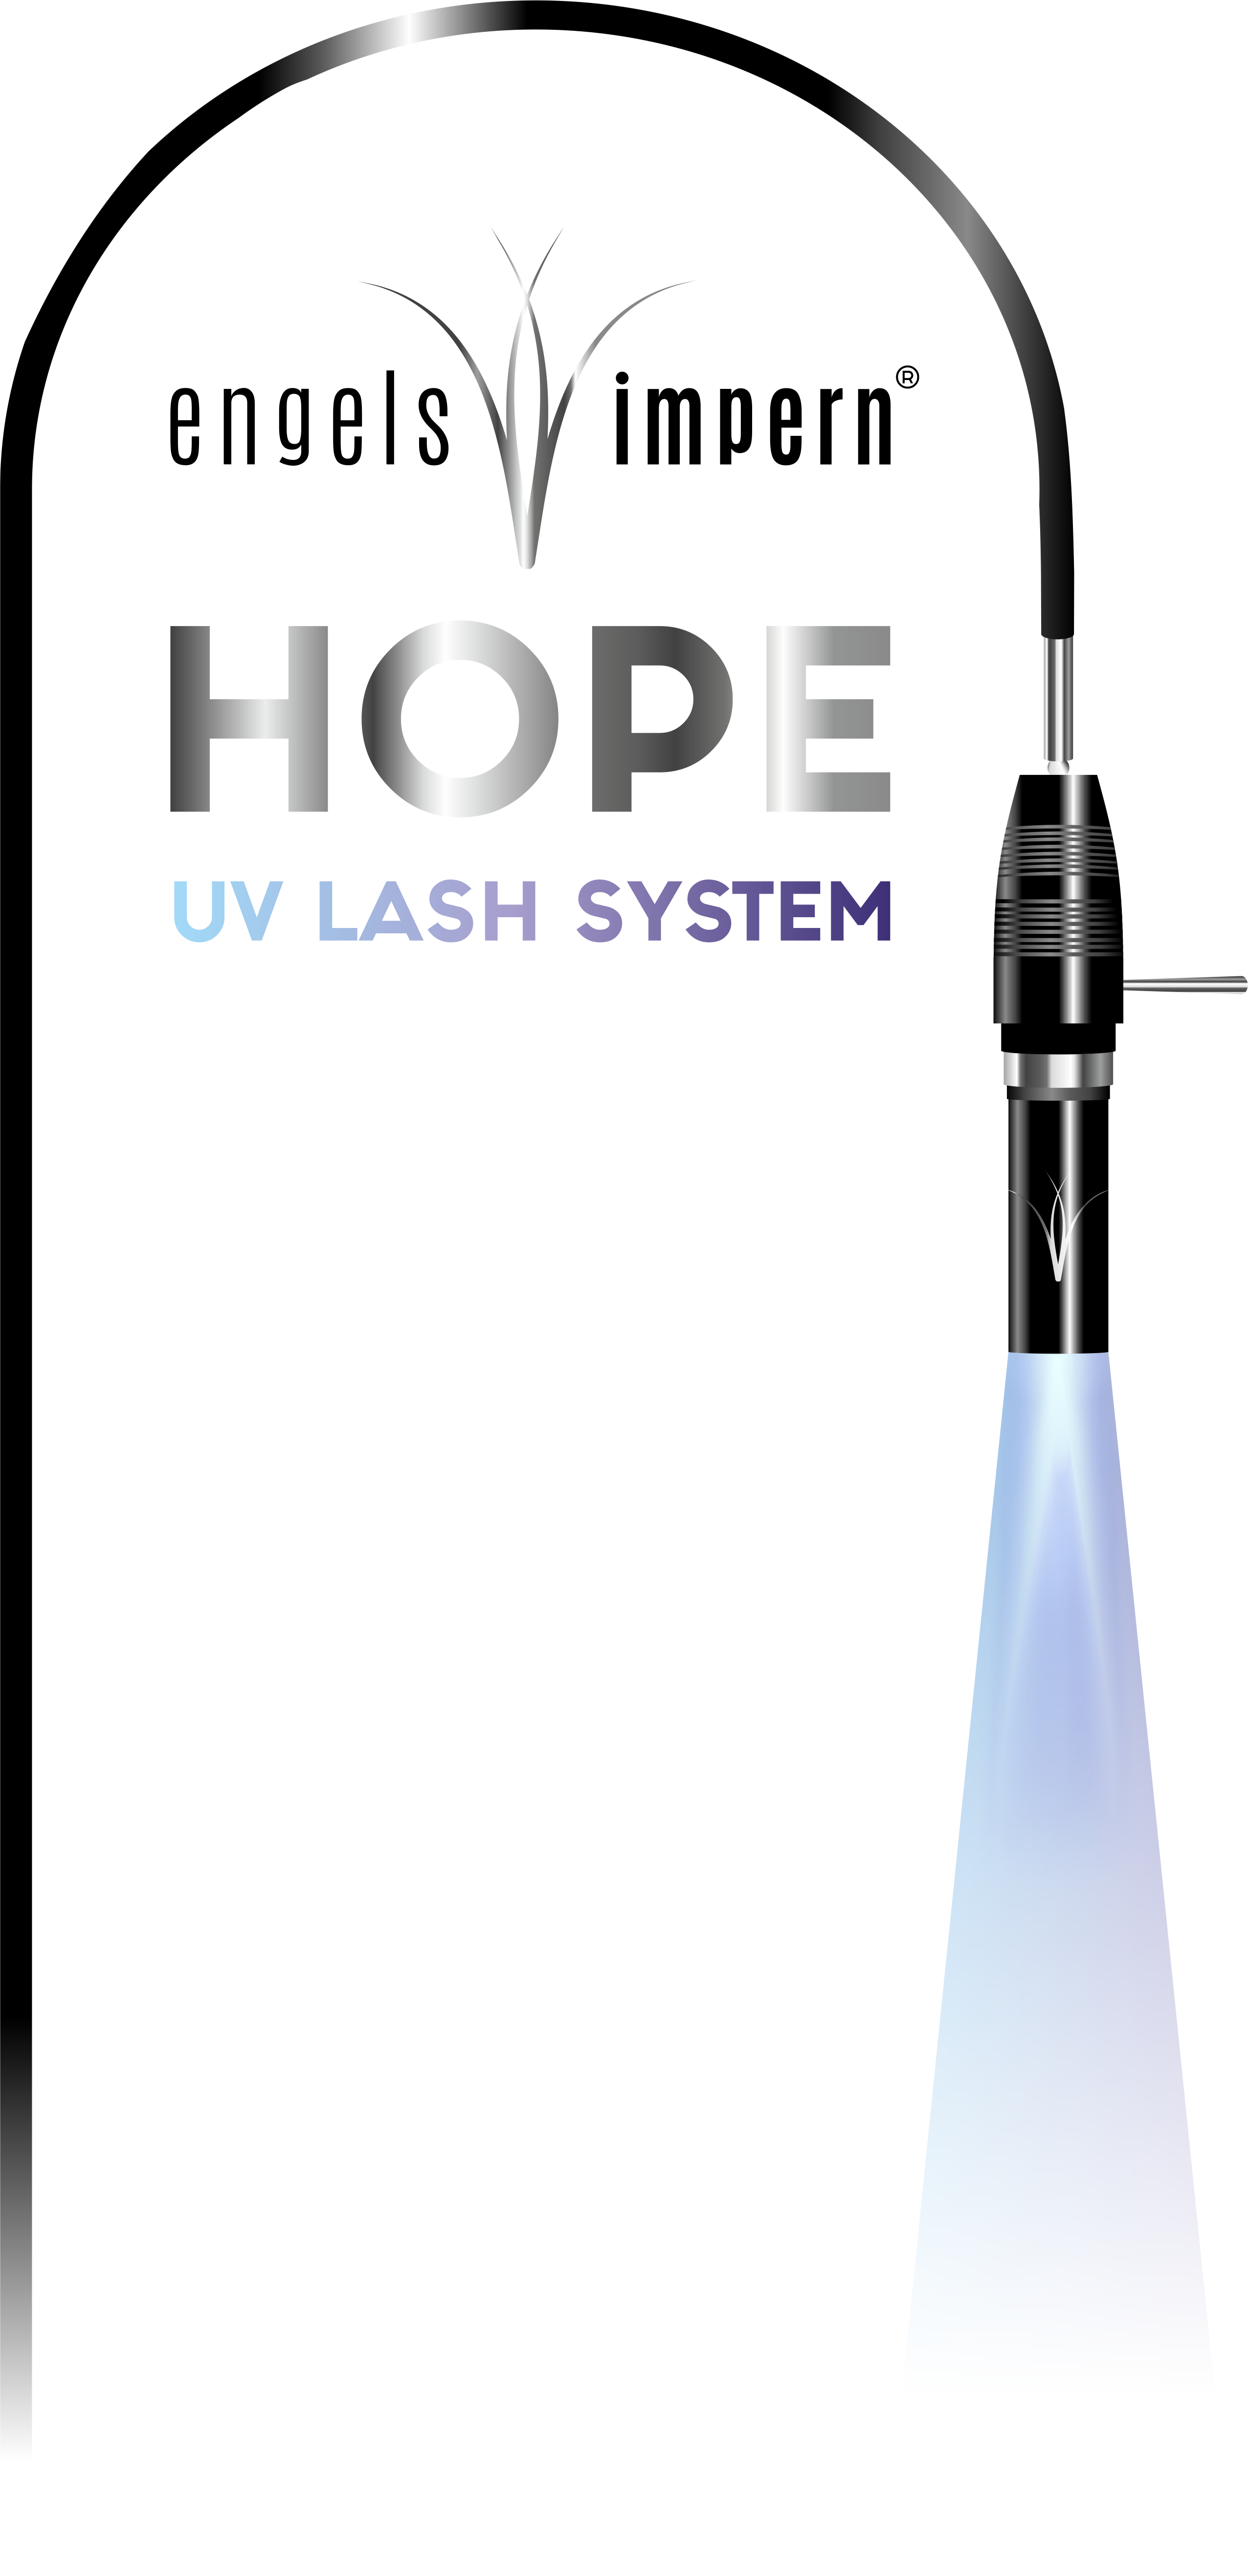 Wimpernverlängerung Wimpern-UV-System UV-Wimpernverlängerung UV-Lashes Wimpern-UV-Behandlung UV-Wimpernsystem Lash-UV-Verfahren Wimpern-UV-Technik UV-Lash-Erweiterung Wimpern-UV-Methode